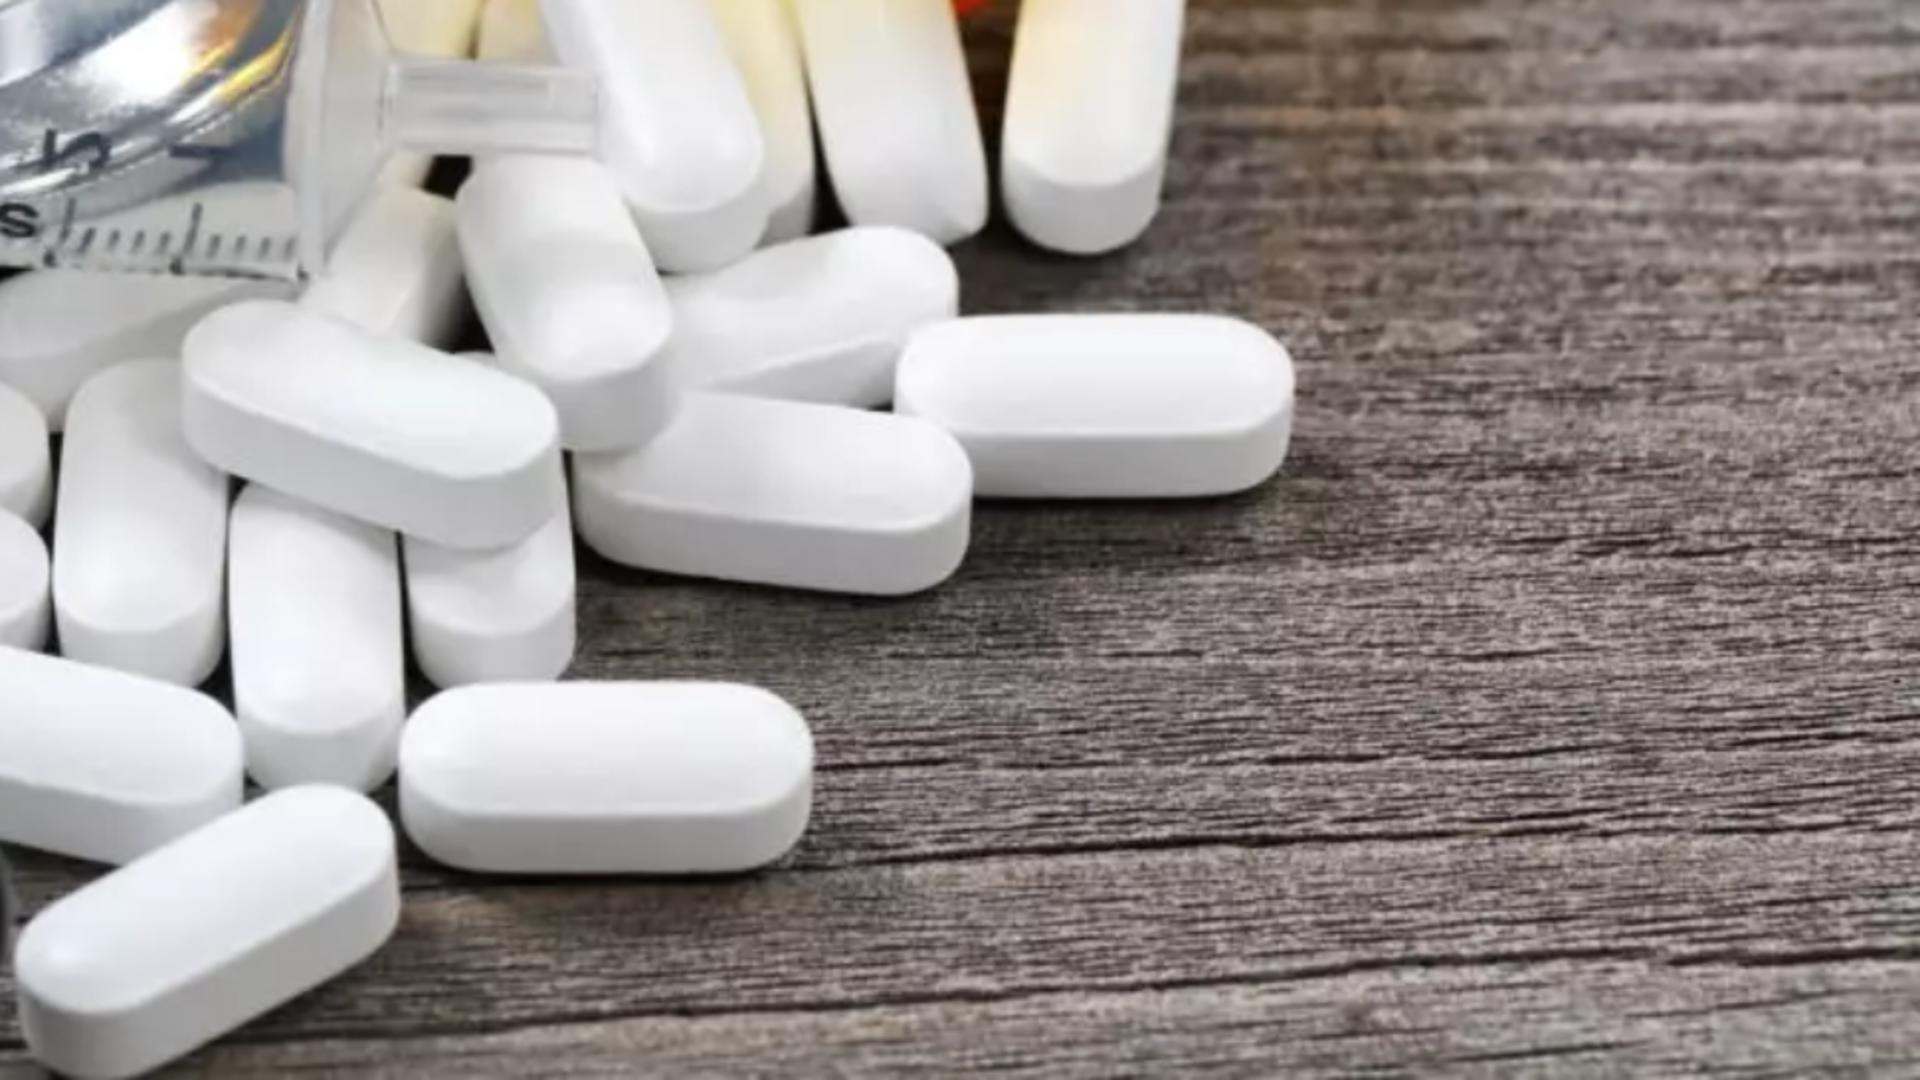 Controale la sânge în peste 500 de farmacii care eliberează oxicodonă și fentanil – Ministerul Sănătății, anunț despre drogul mortal